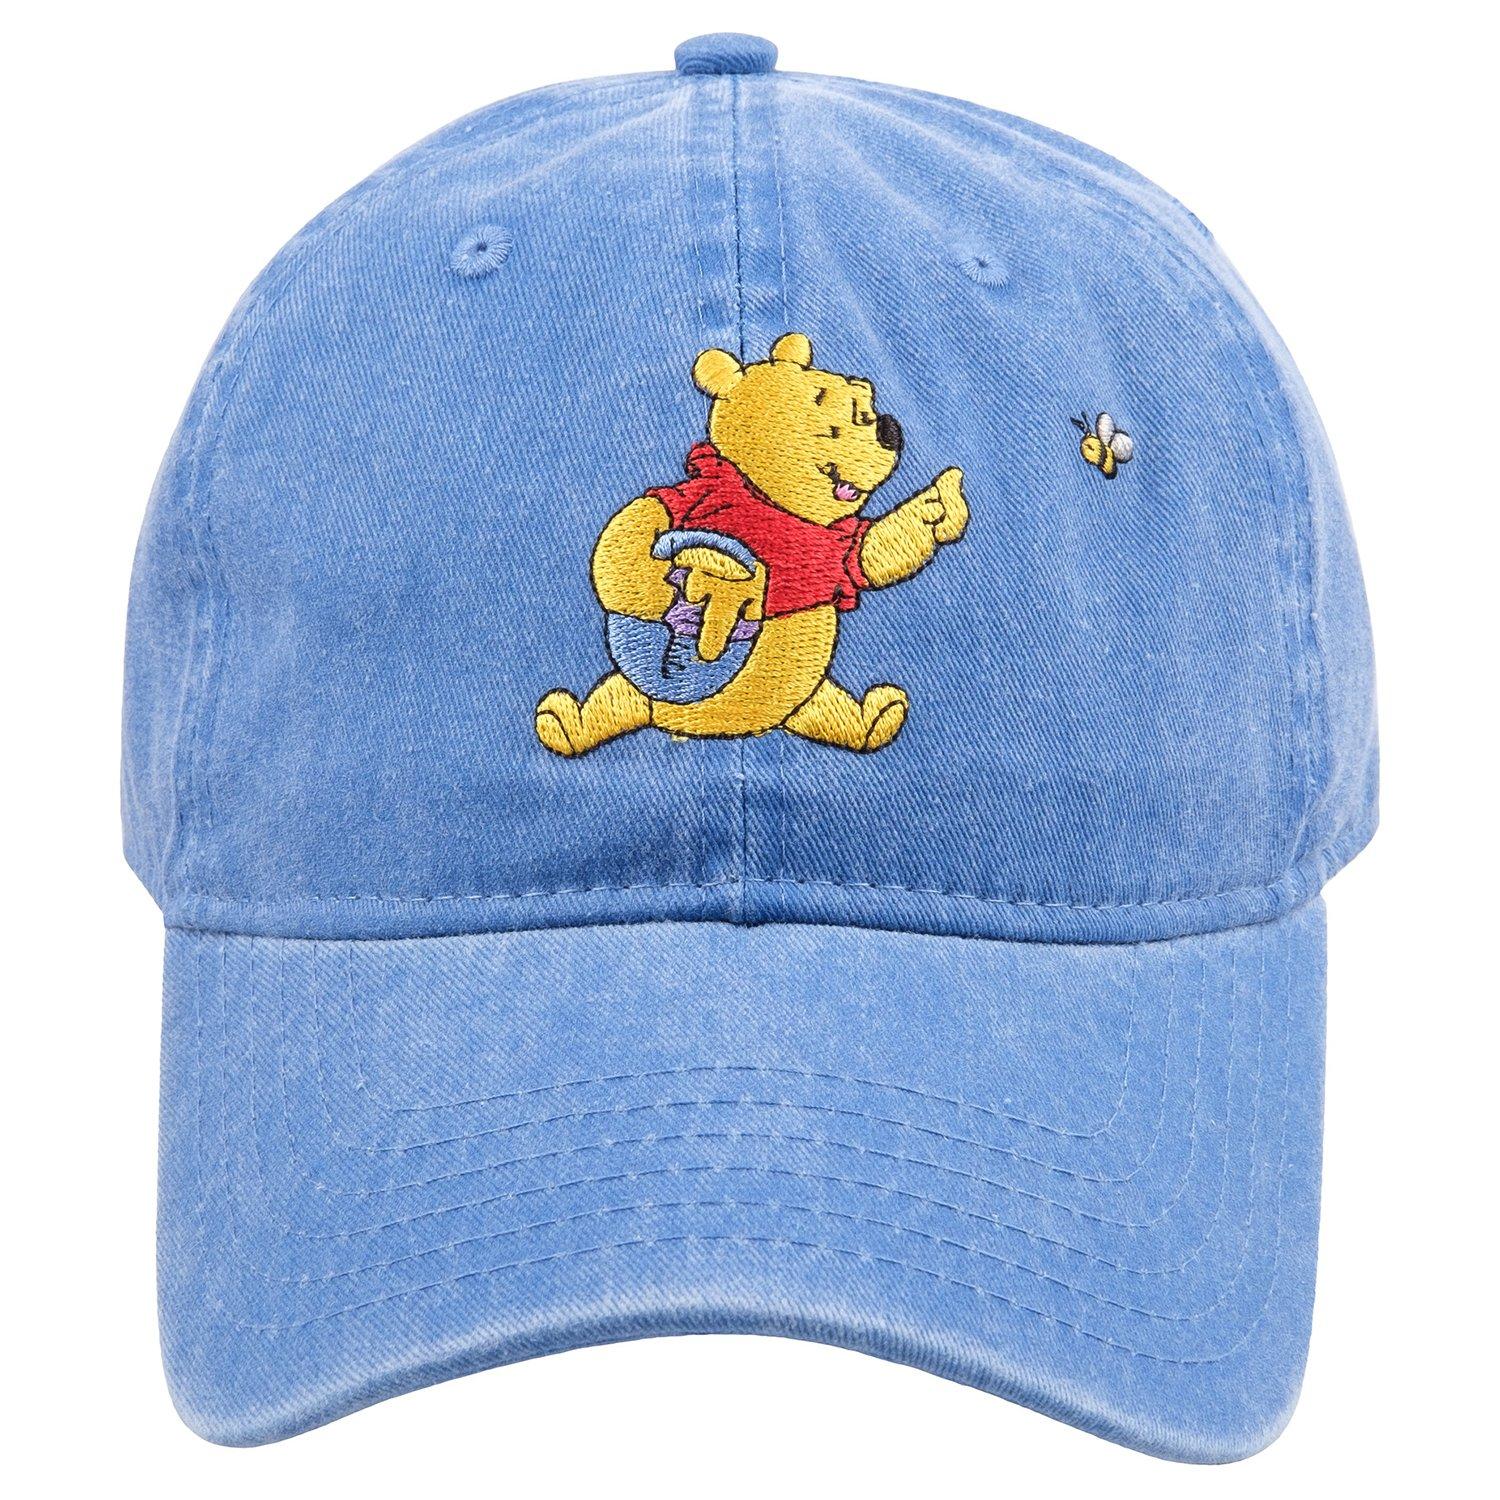 Disney Winnie The Pooh Embroidered Adjustable Baseball Hat